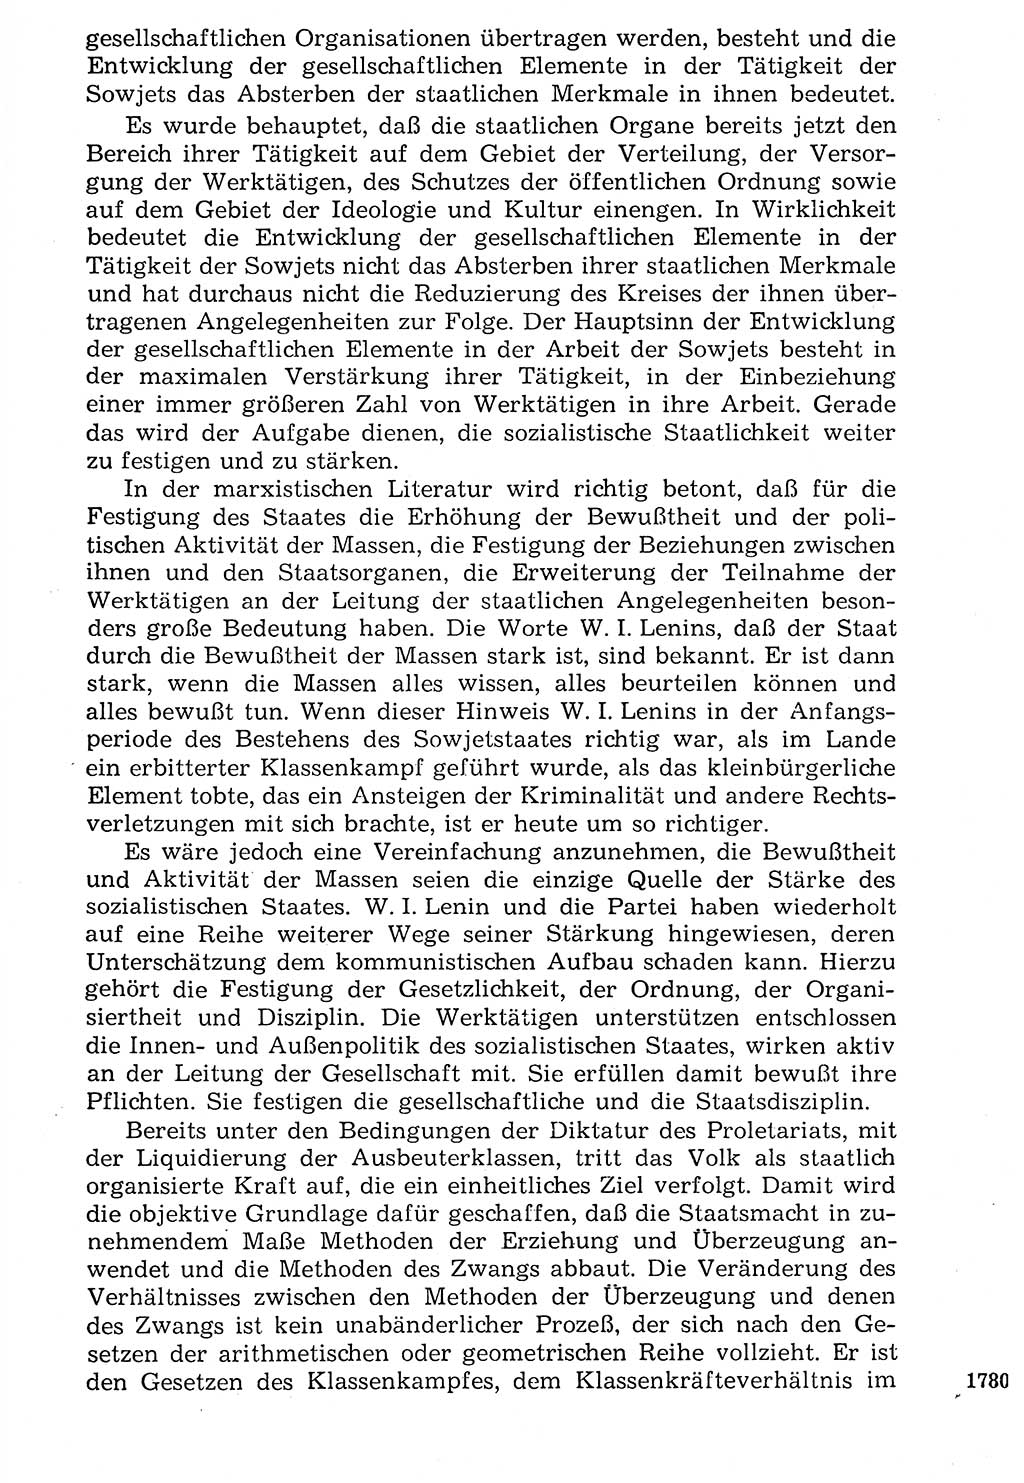 Staat und Recht (StuR), 17. Jahrgang [Deutsche Demokratische Republik (DDR)] 1968, Seite 1780 (StuR DDR 1968, S. 1780)